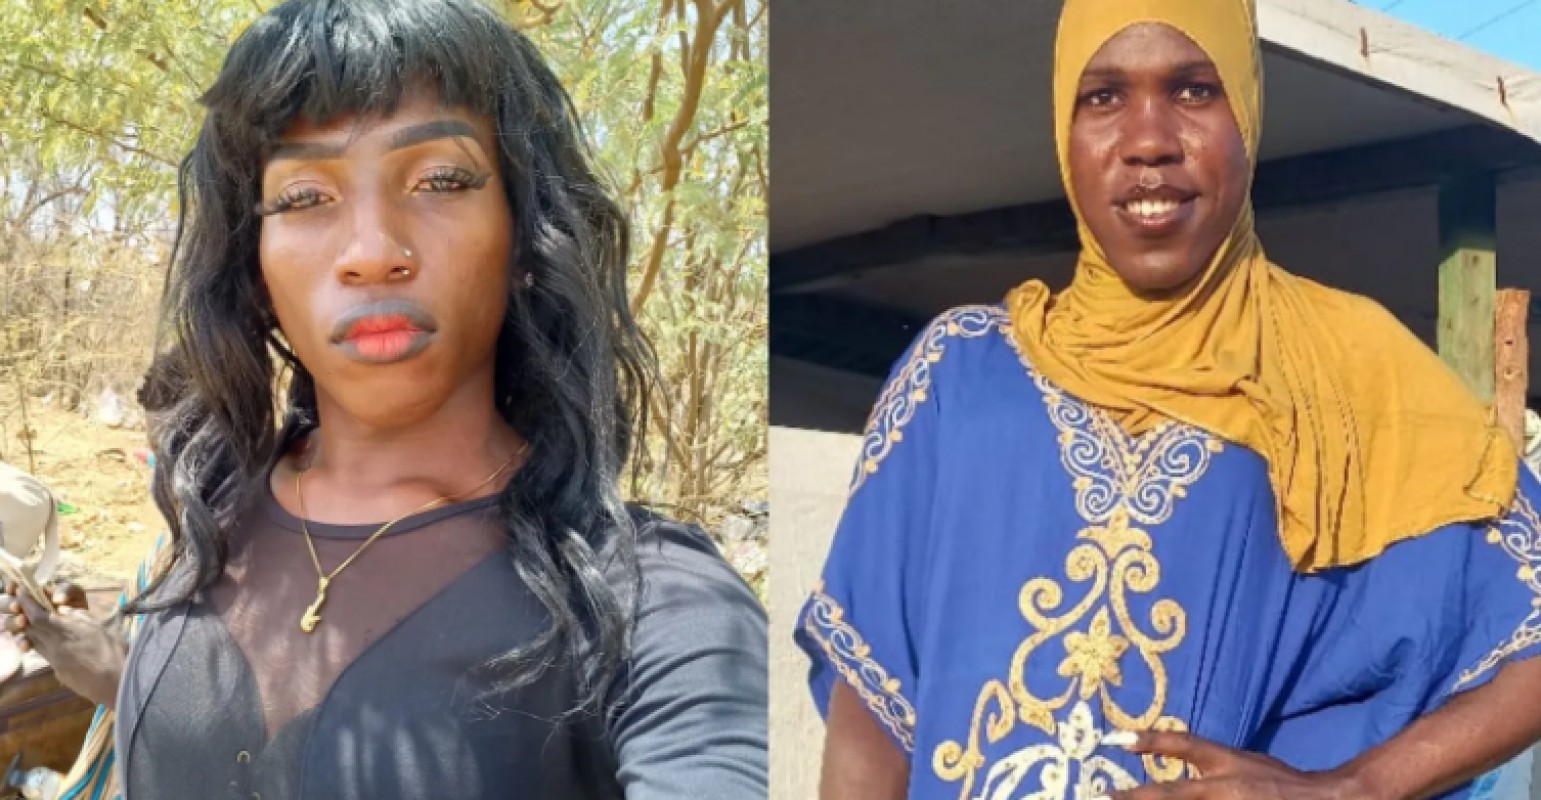 Kenya : les femmes trans sont violées, battues et humiliées selon une enquête